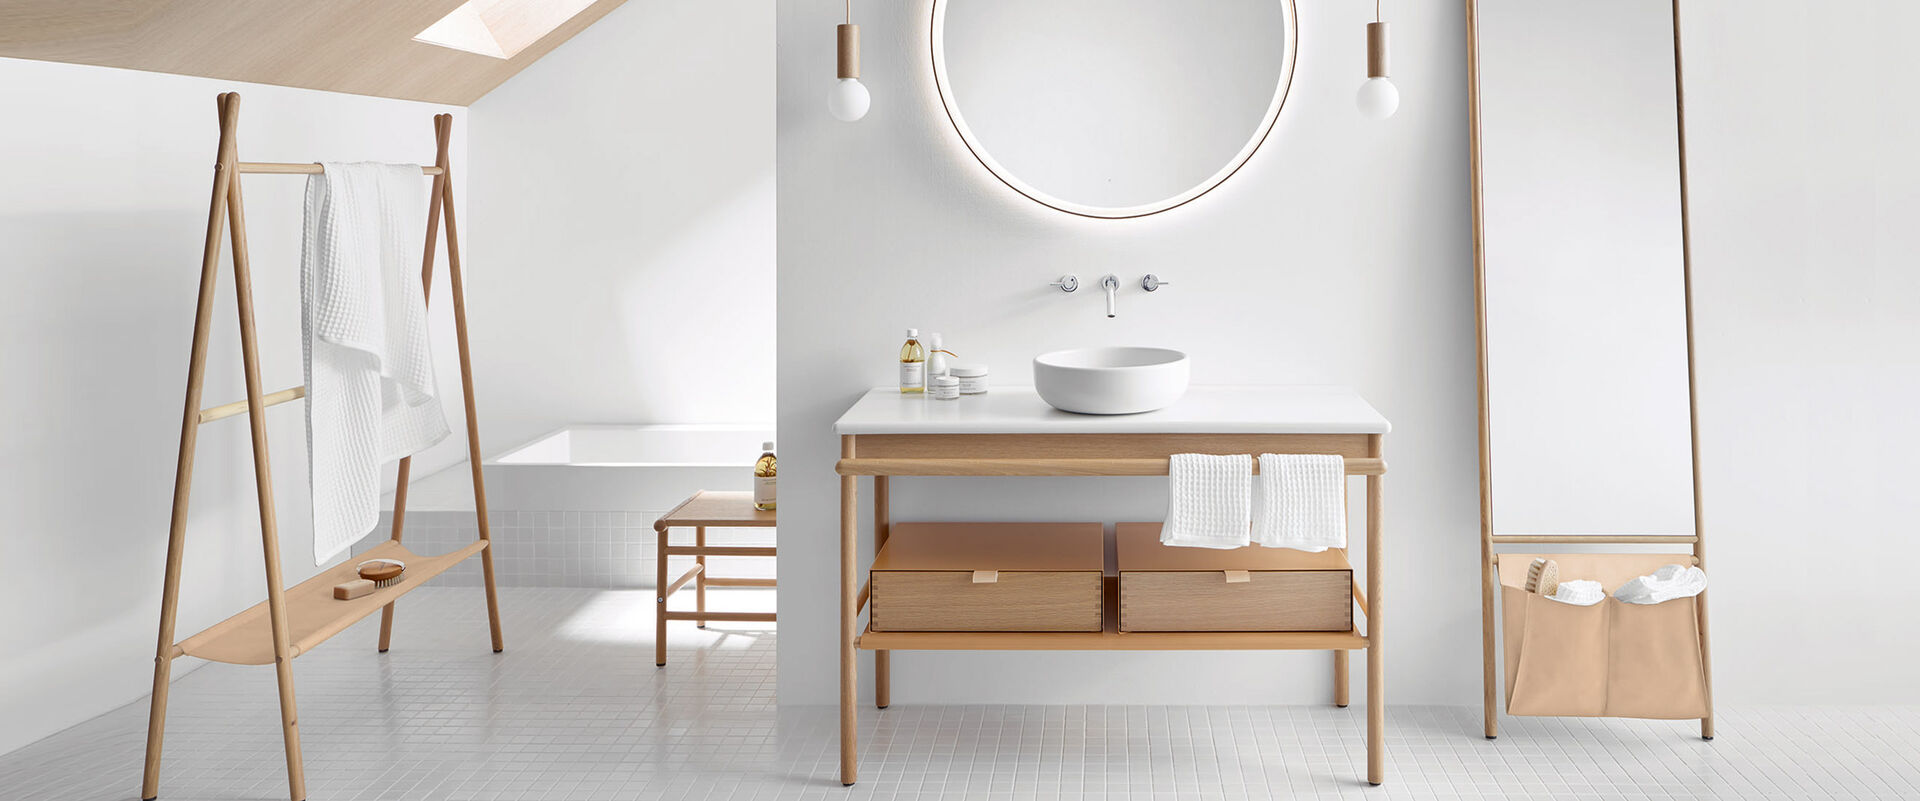 Designer Badezimmereinrichtung von burgbad aus der Serie Mya. Helles Naturholz und klassische Stelzenfüße charakterisieren diese Badmöbel. 